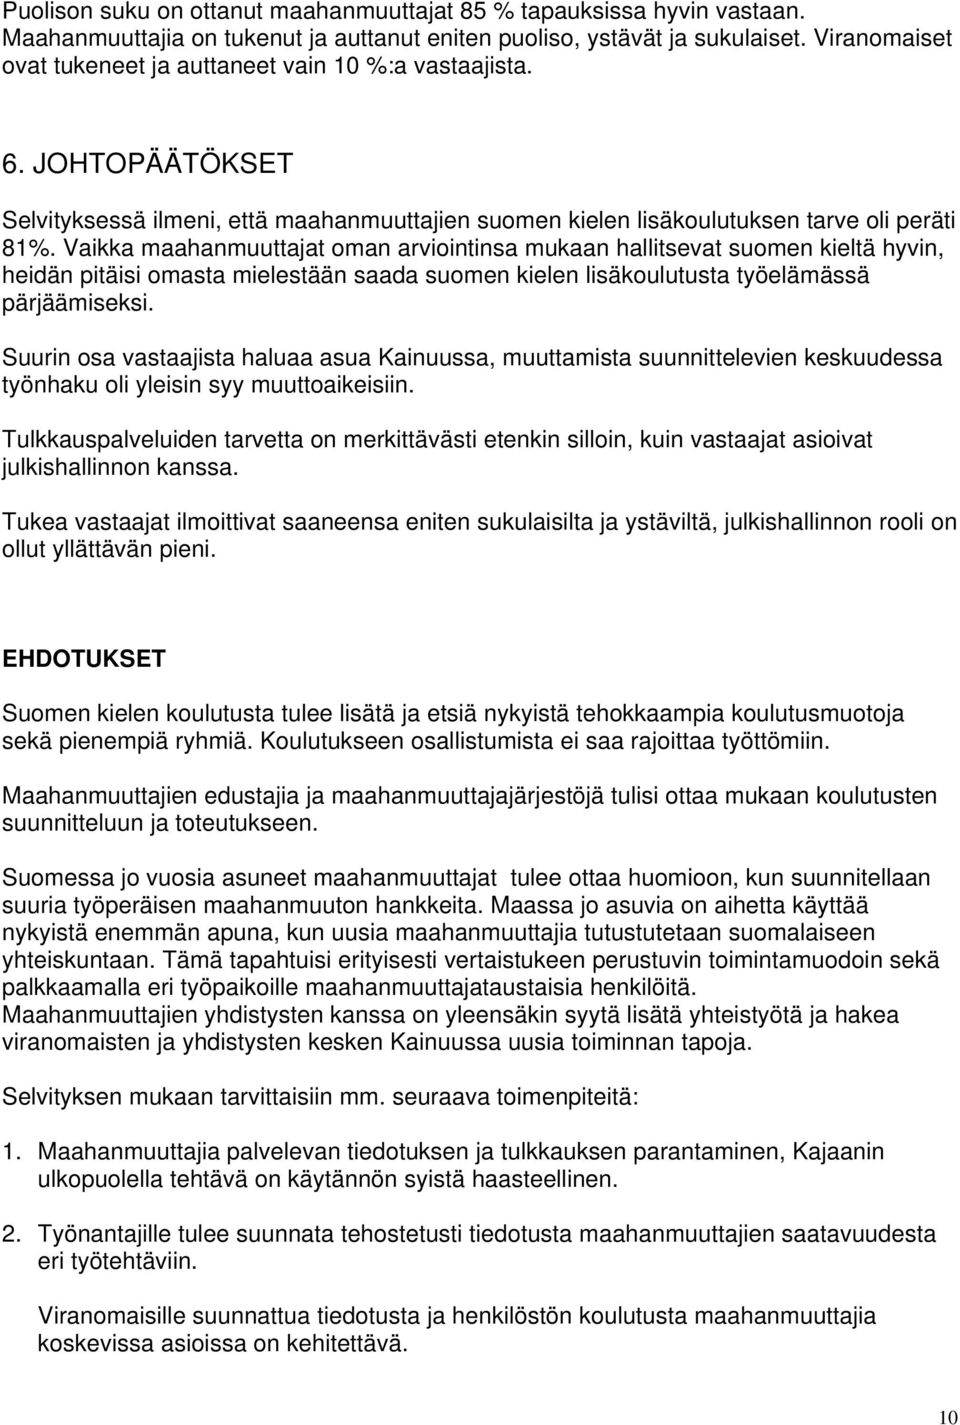 Vaikka maahanmuuttajat oman arviointinsa mukaan hallitsevat suomen kieltä hyvin, heidän pitäisi omasta mielestään saada suomen kielen lisäkoulutusta työelämässä pärjäämiseksi.